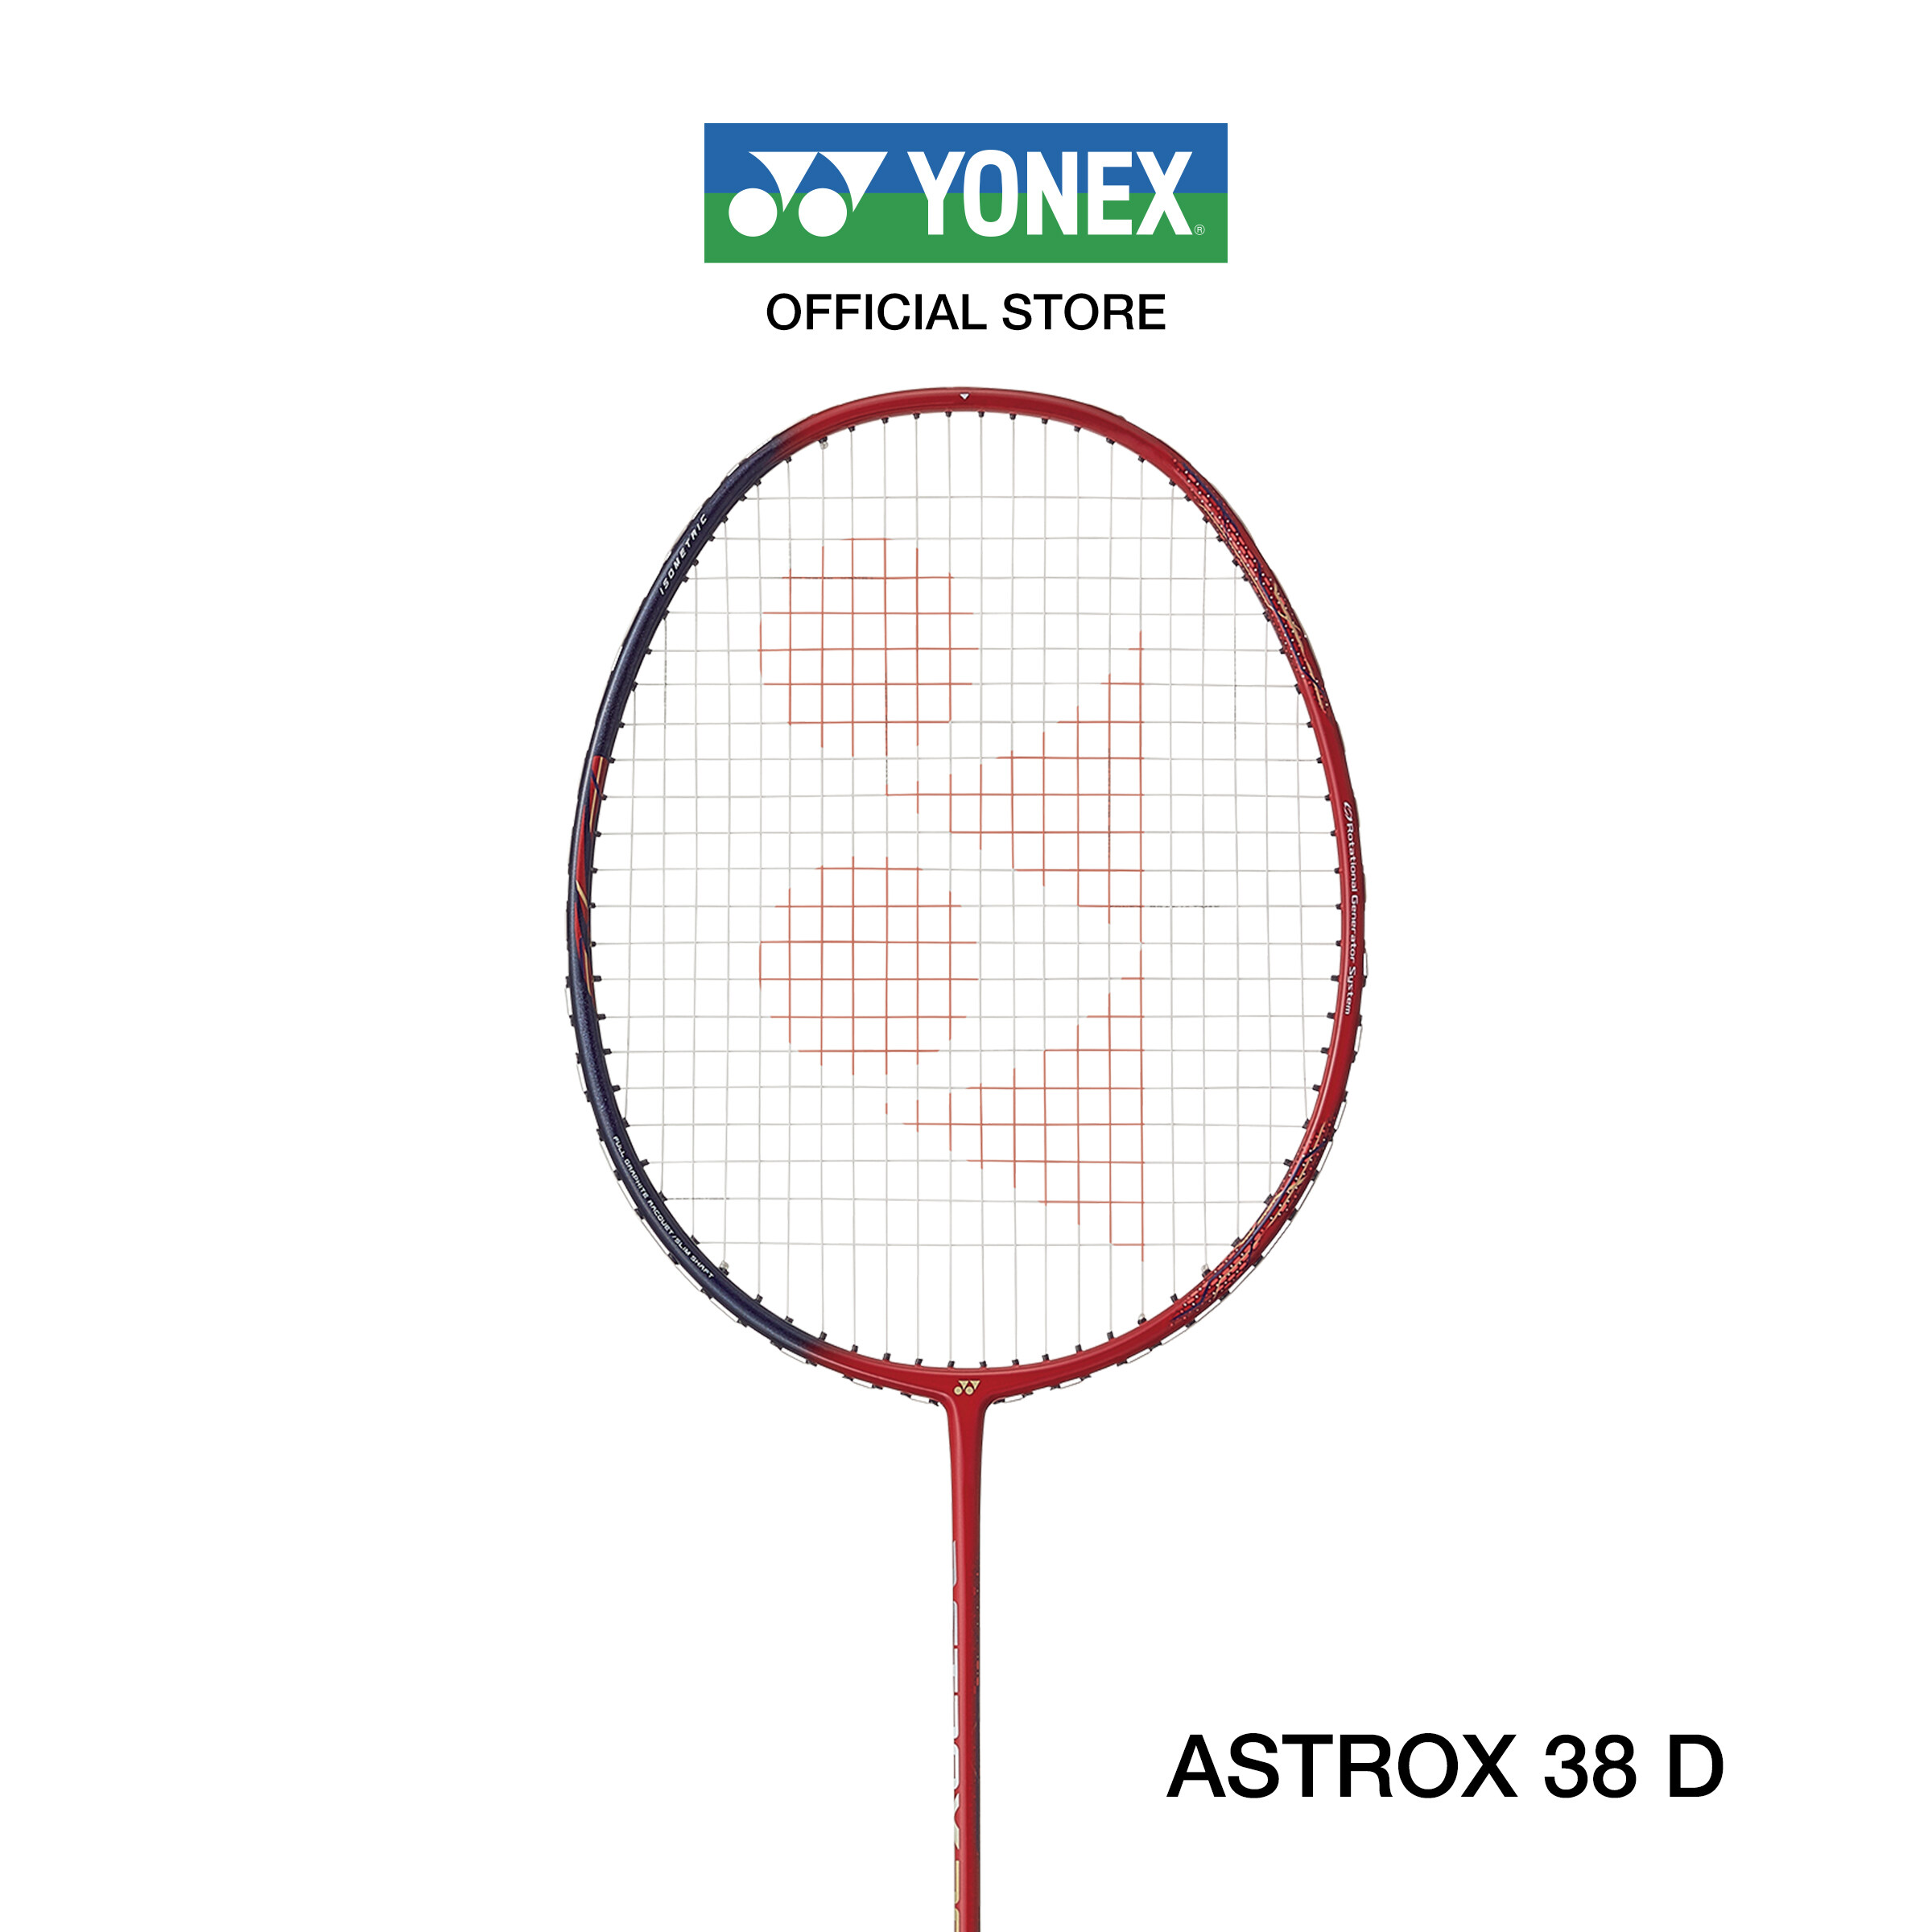 YONEX ไม้แบดมินตัน รุ่น ASTROX 38D น้ำหนัก 83g (4U G5) ไม้หัวหนัก ก้านแข็ง สำหรับผู้เล่นที่เล่นครองเกมครอบคลุมทั้งคอร์ต แถมเอ็น BG65